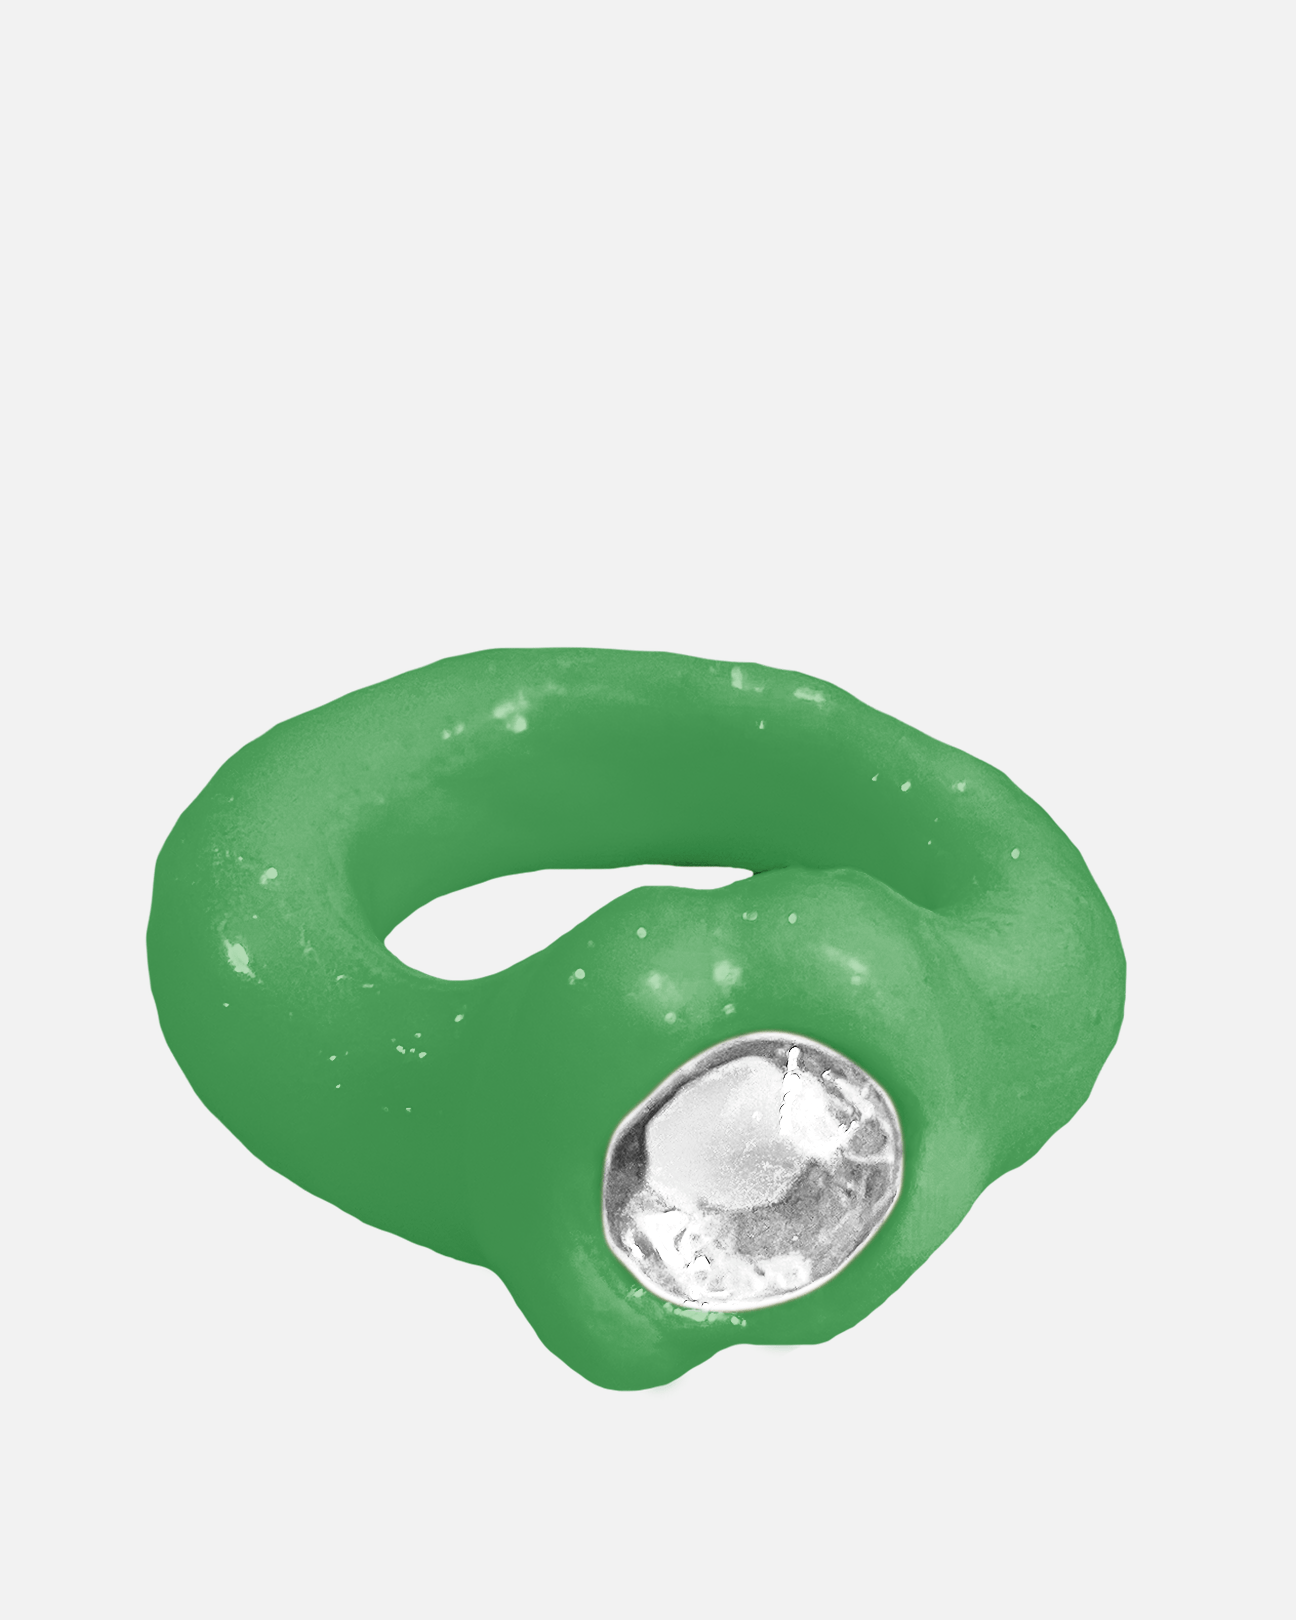 BLOBB Jewelry OG Blobb Ring in Green/White